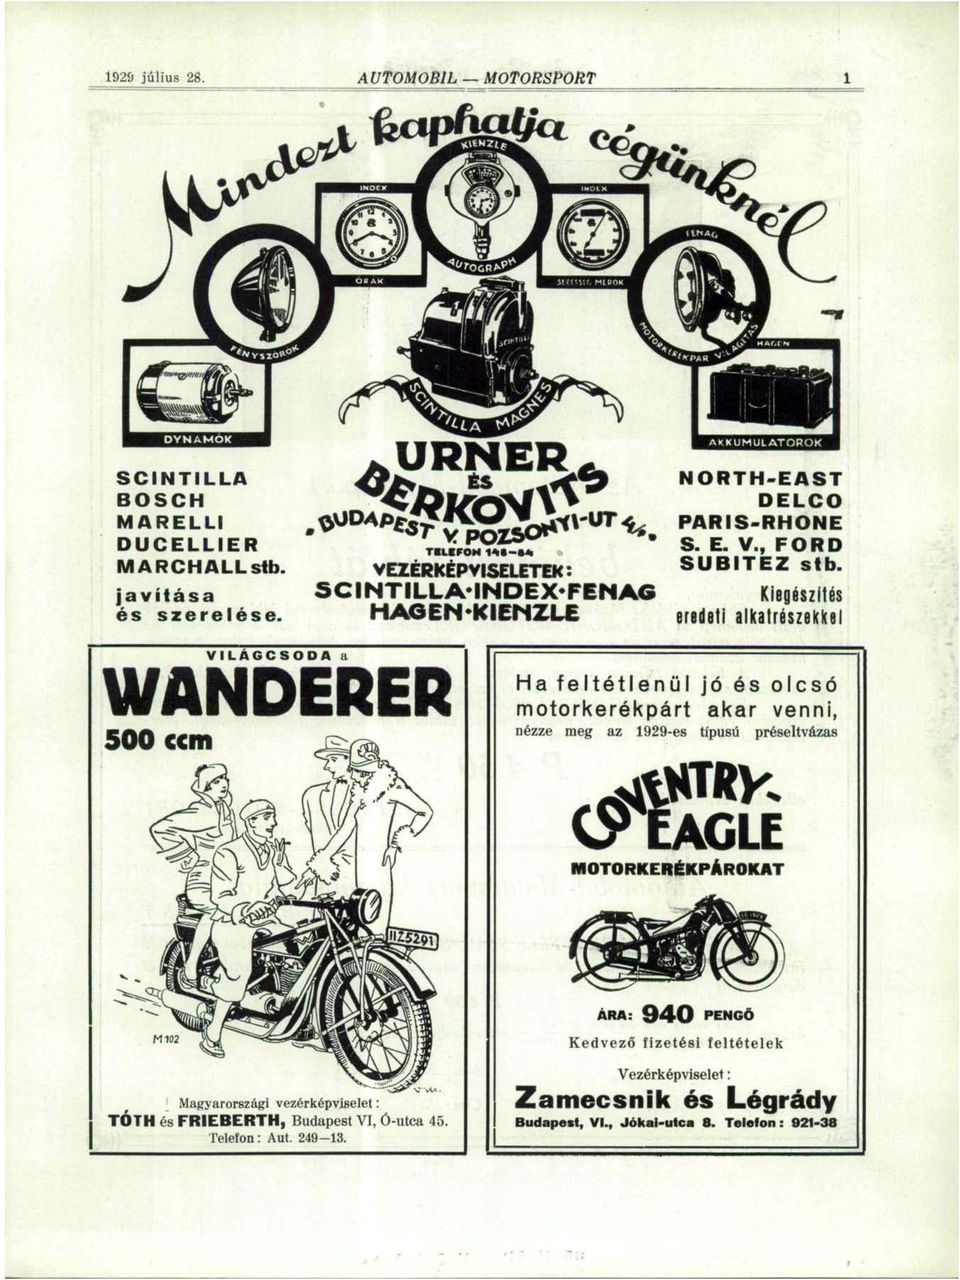 eredeti Kiegészítés alkatrészekkel VILÁGCSODA WANDERER 500 ccm a Ha feltétlenül jó és olcsó motorkerékpárt akar venni, nézze meg az 1929-es típusú préseitvázas k&ntrr CytAGLE